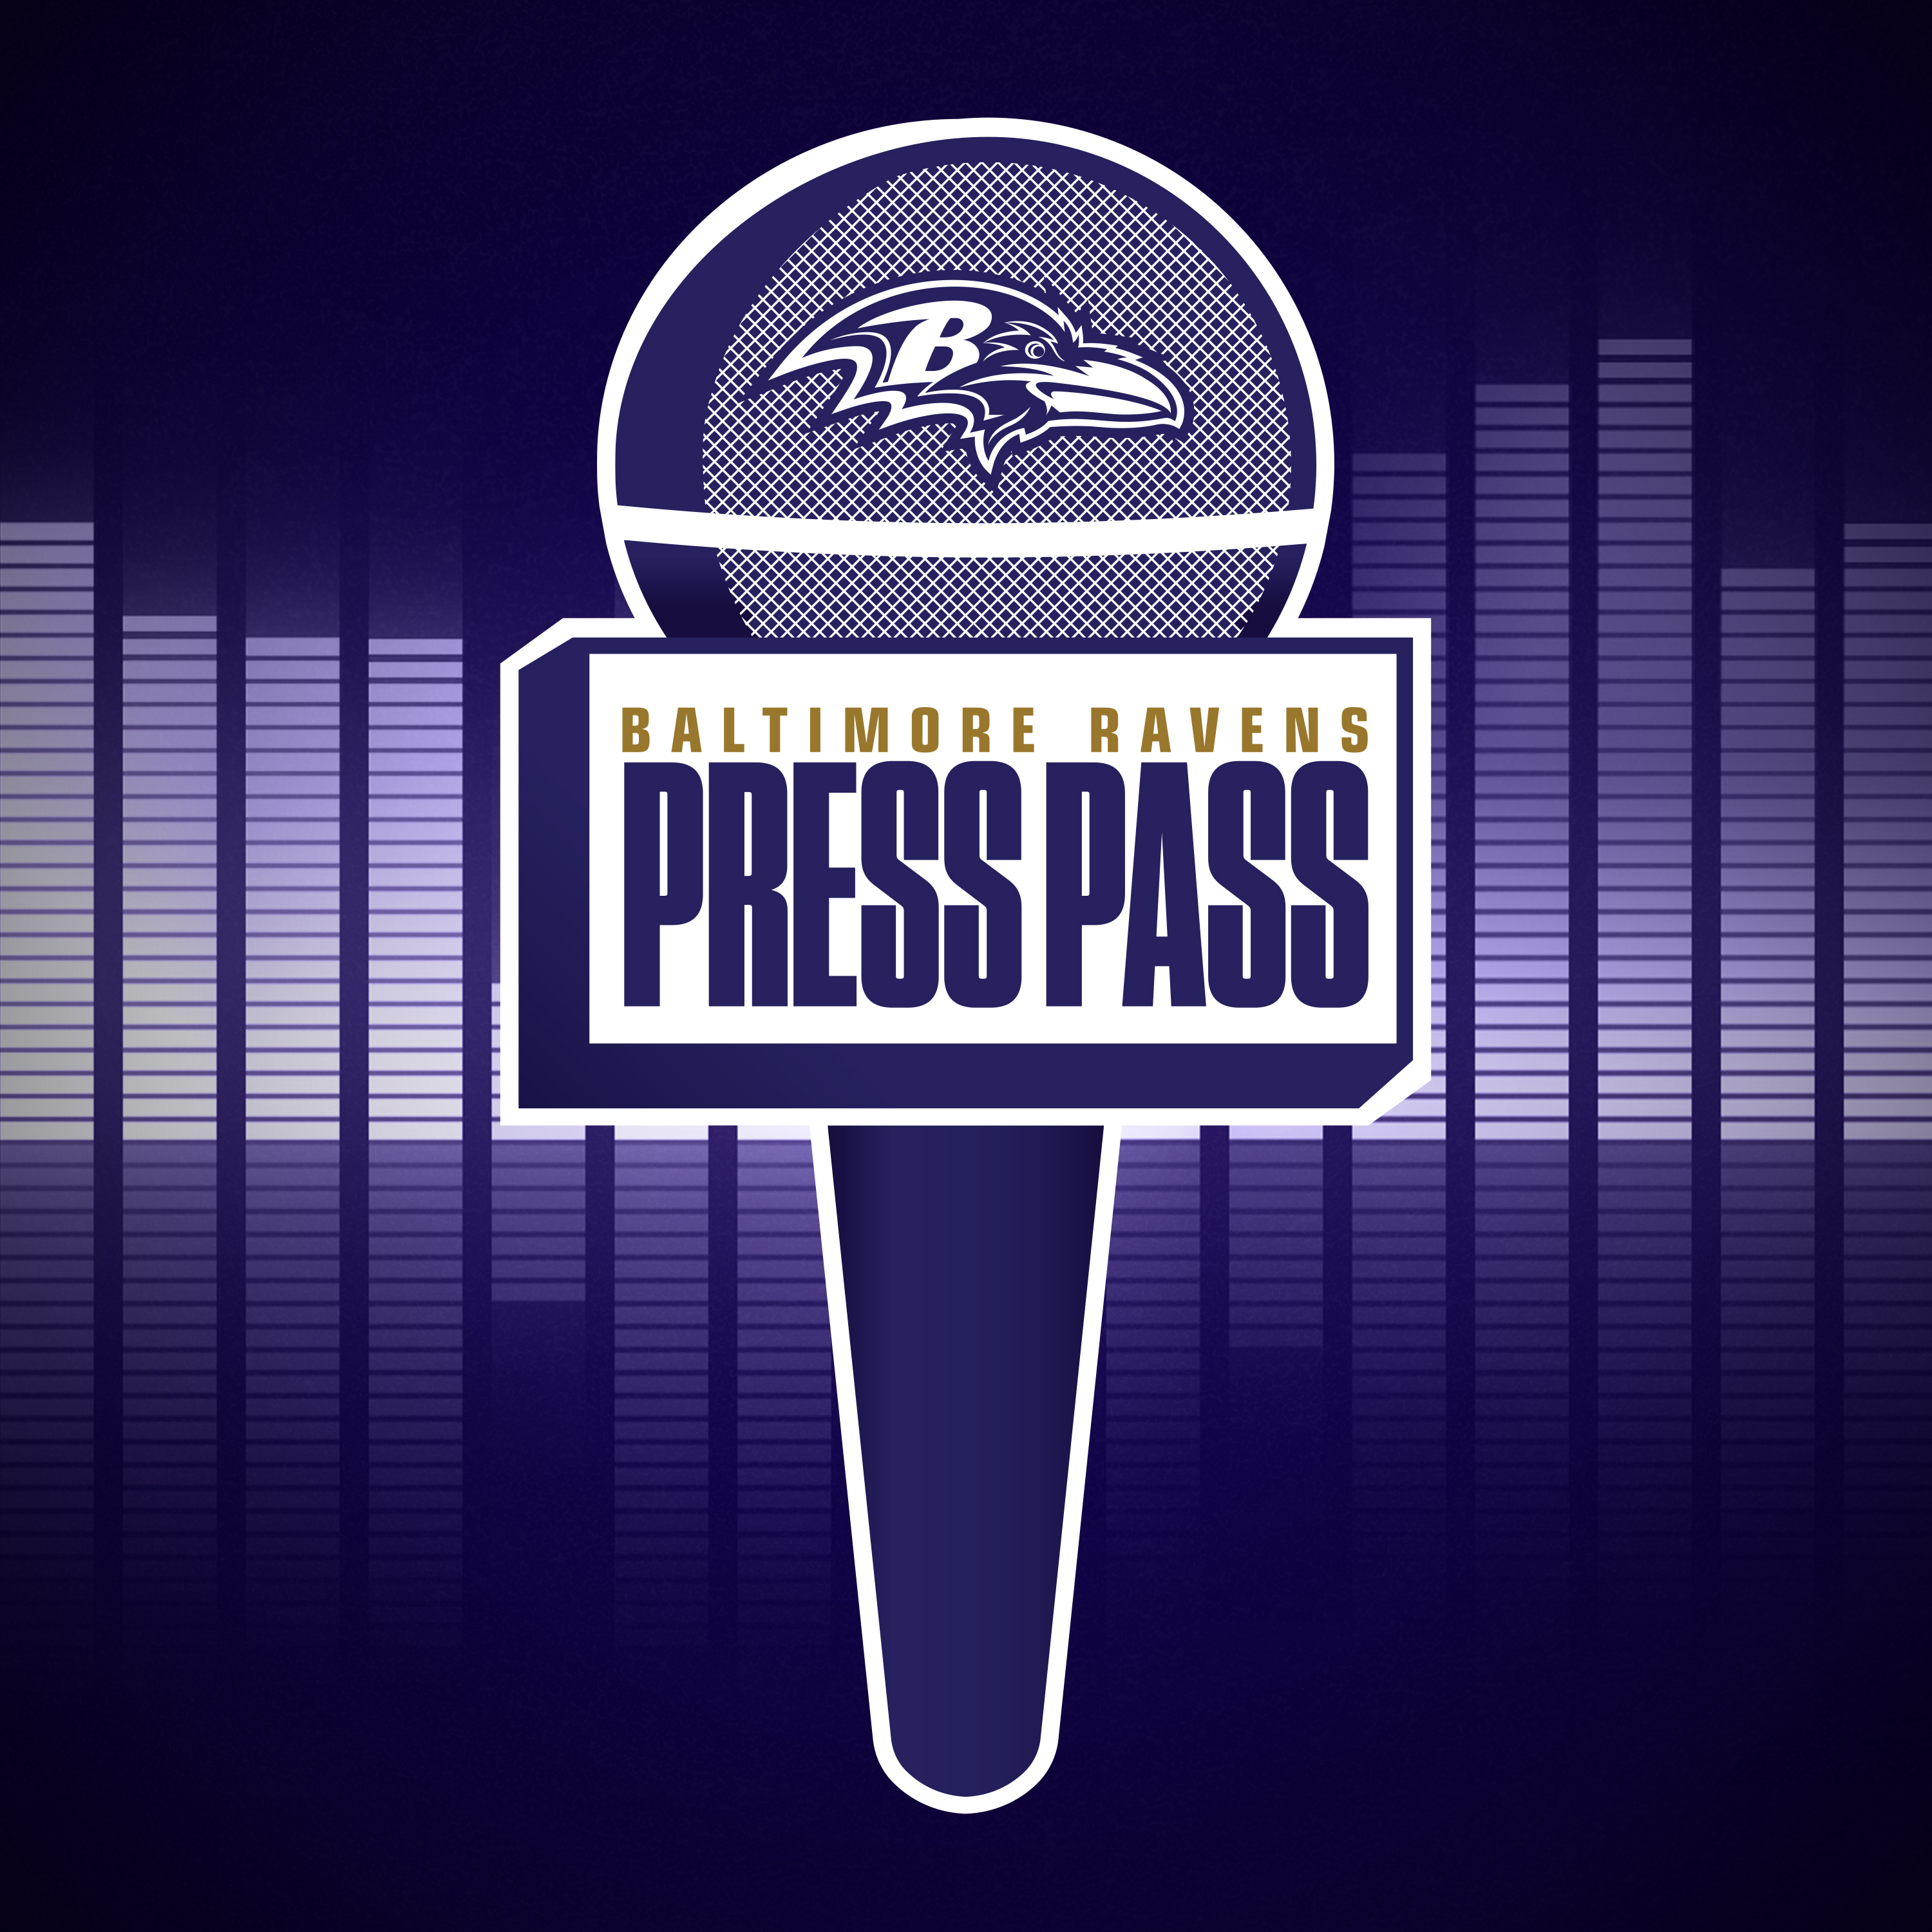 Ravens NFL Draft Day 2 Press Conferences